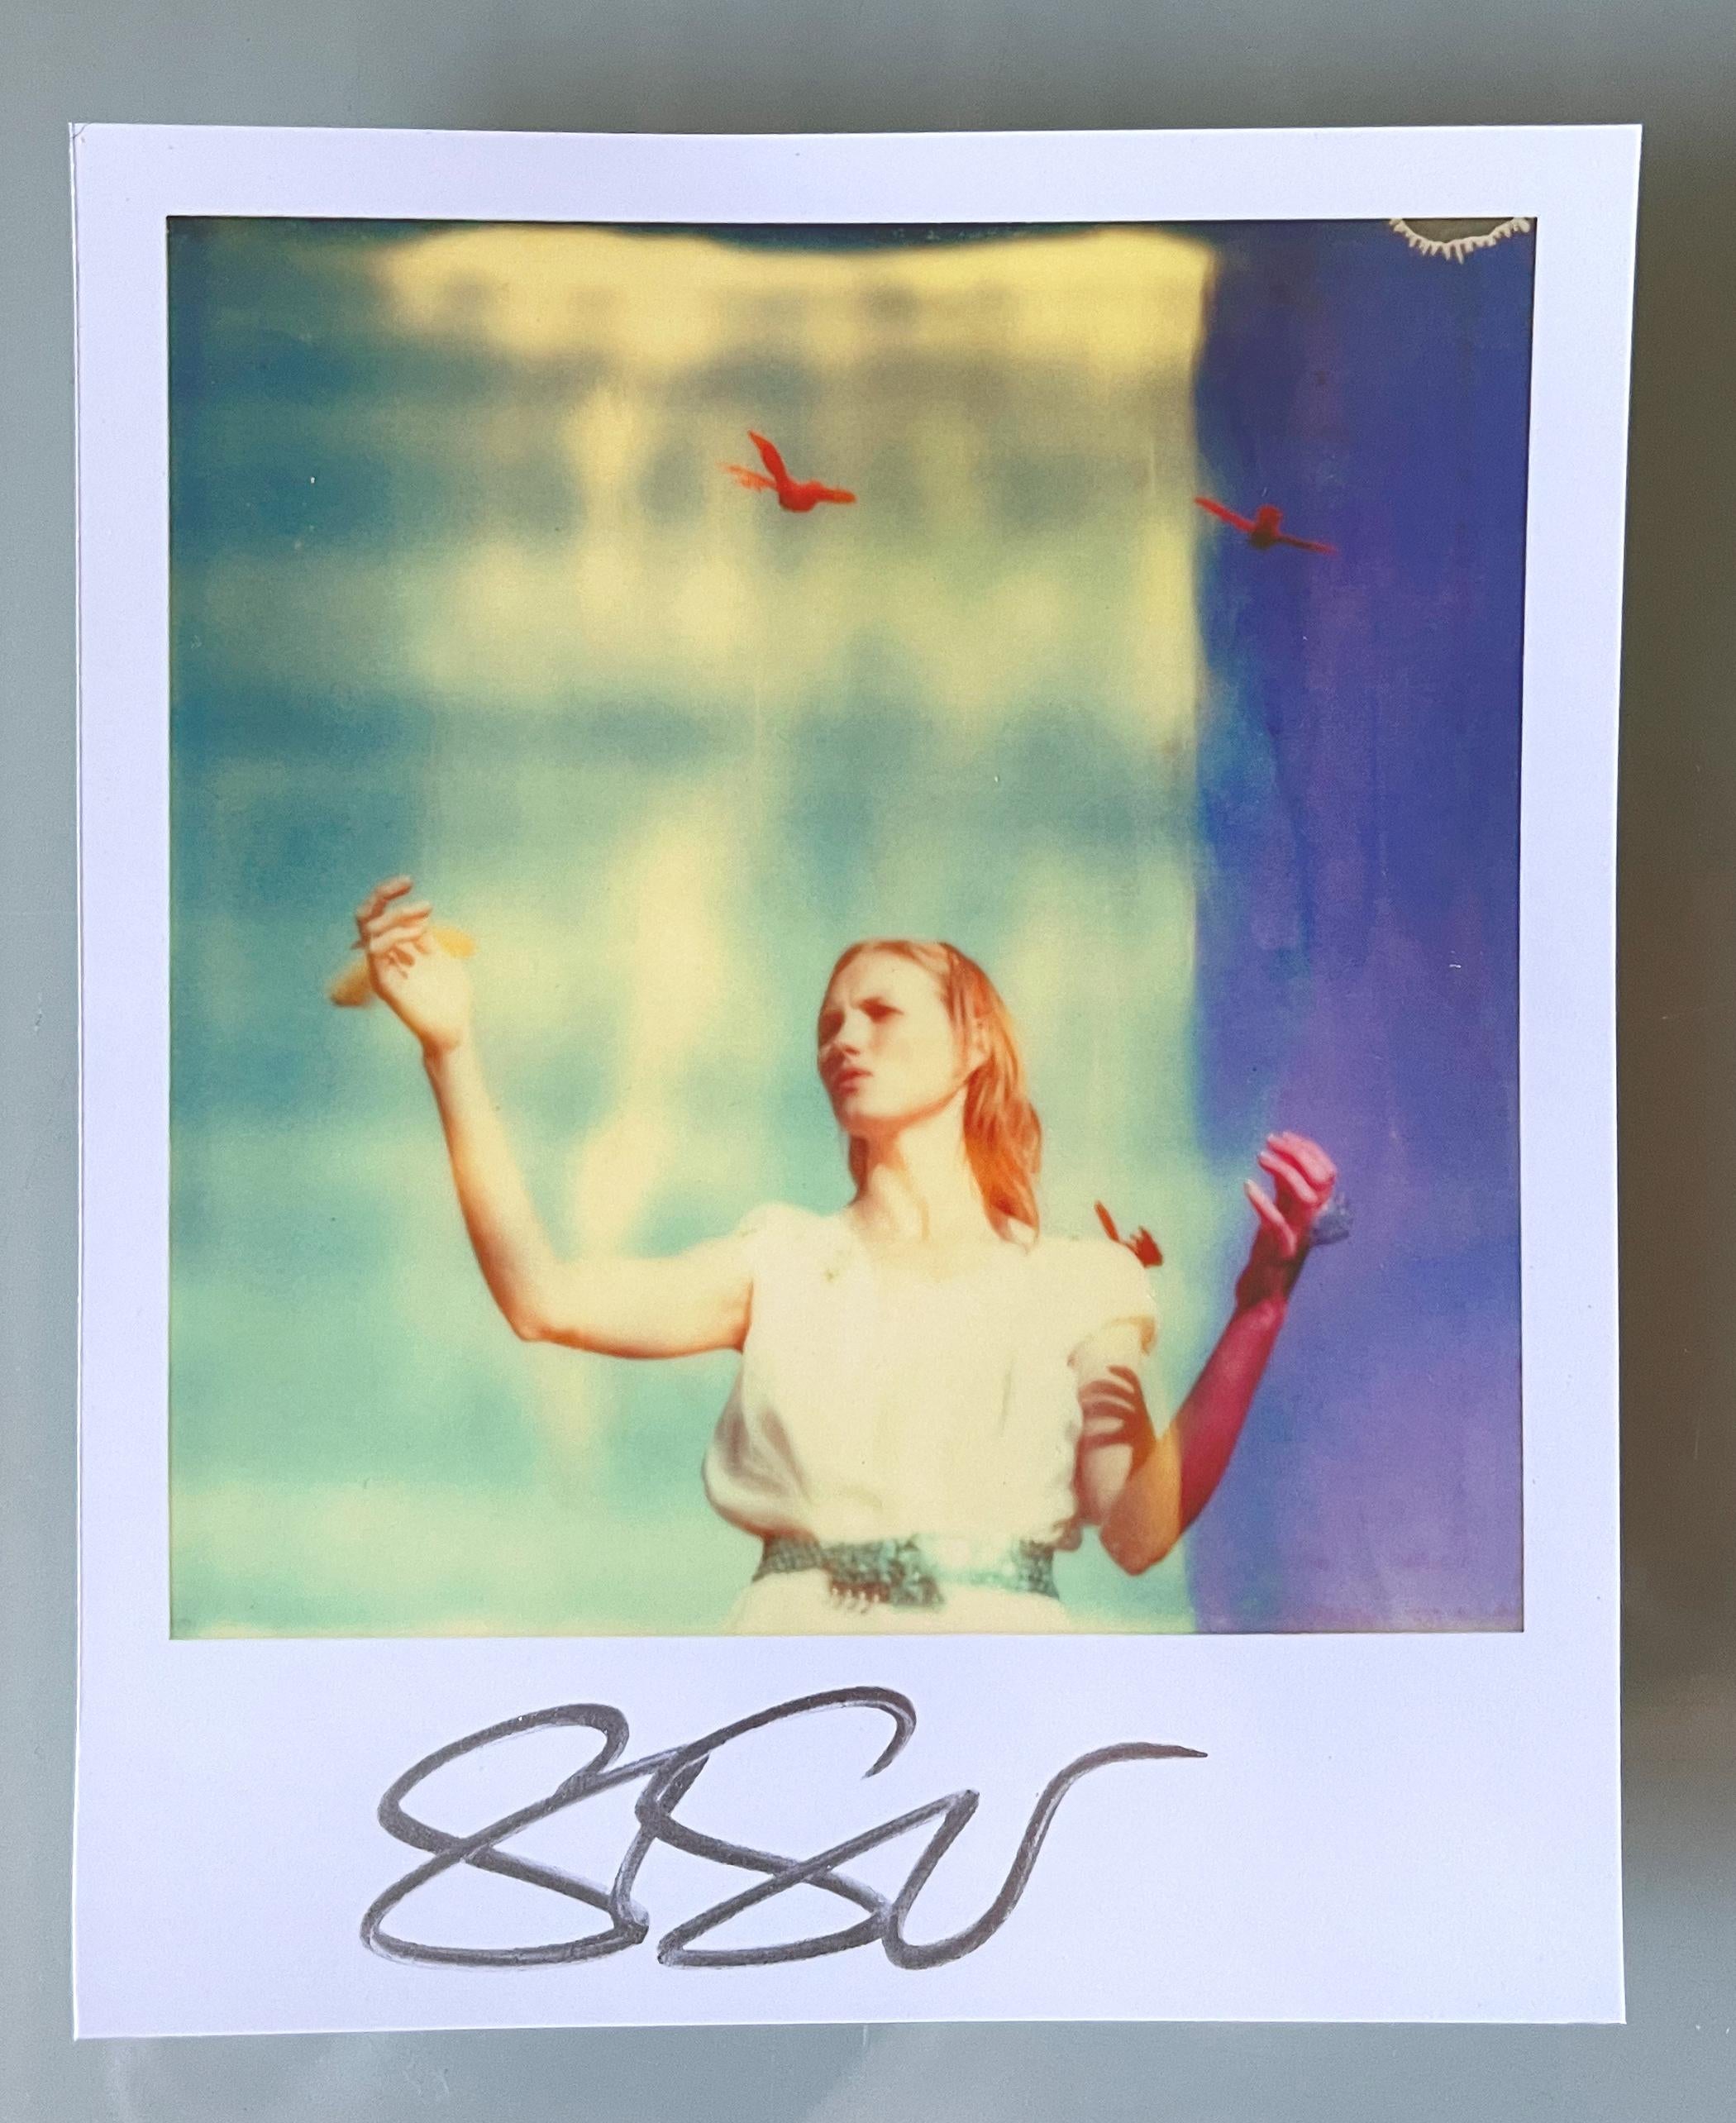 Stefanie Schneider Unbegrenzte Miniatur im Polaroidformat "Haley und die Vögel" - 2013 - 

vorne signiert, nicht montiert. 
1 Digitale Farbfotografien auf der Grundlage eines Polaroids. 

Offene Editionen in Polaroidgröße 1999-2016
10.jeweils 7 x